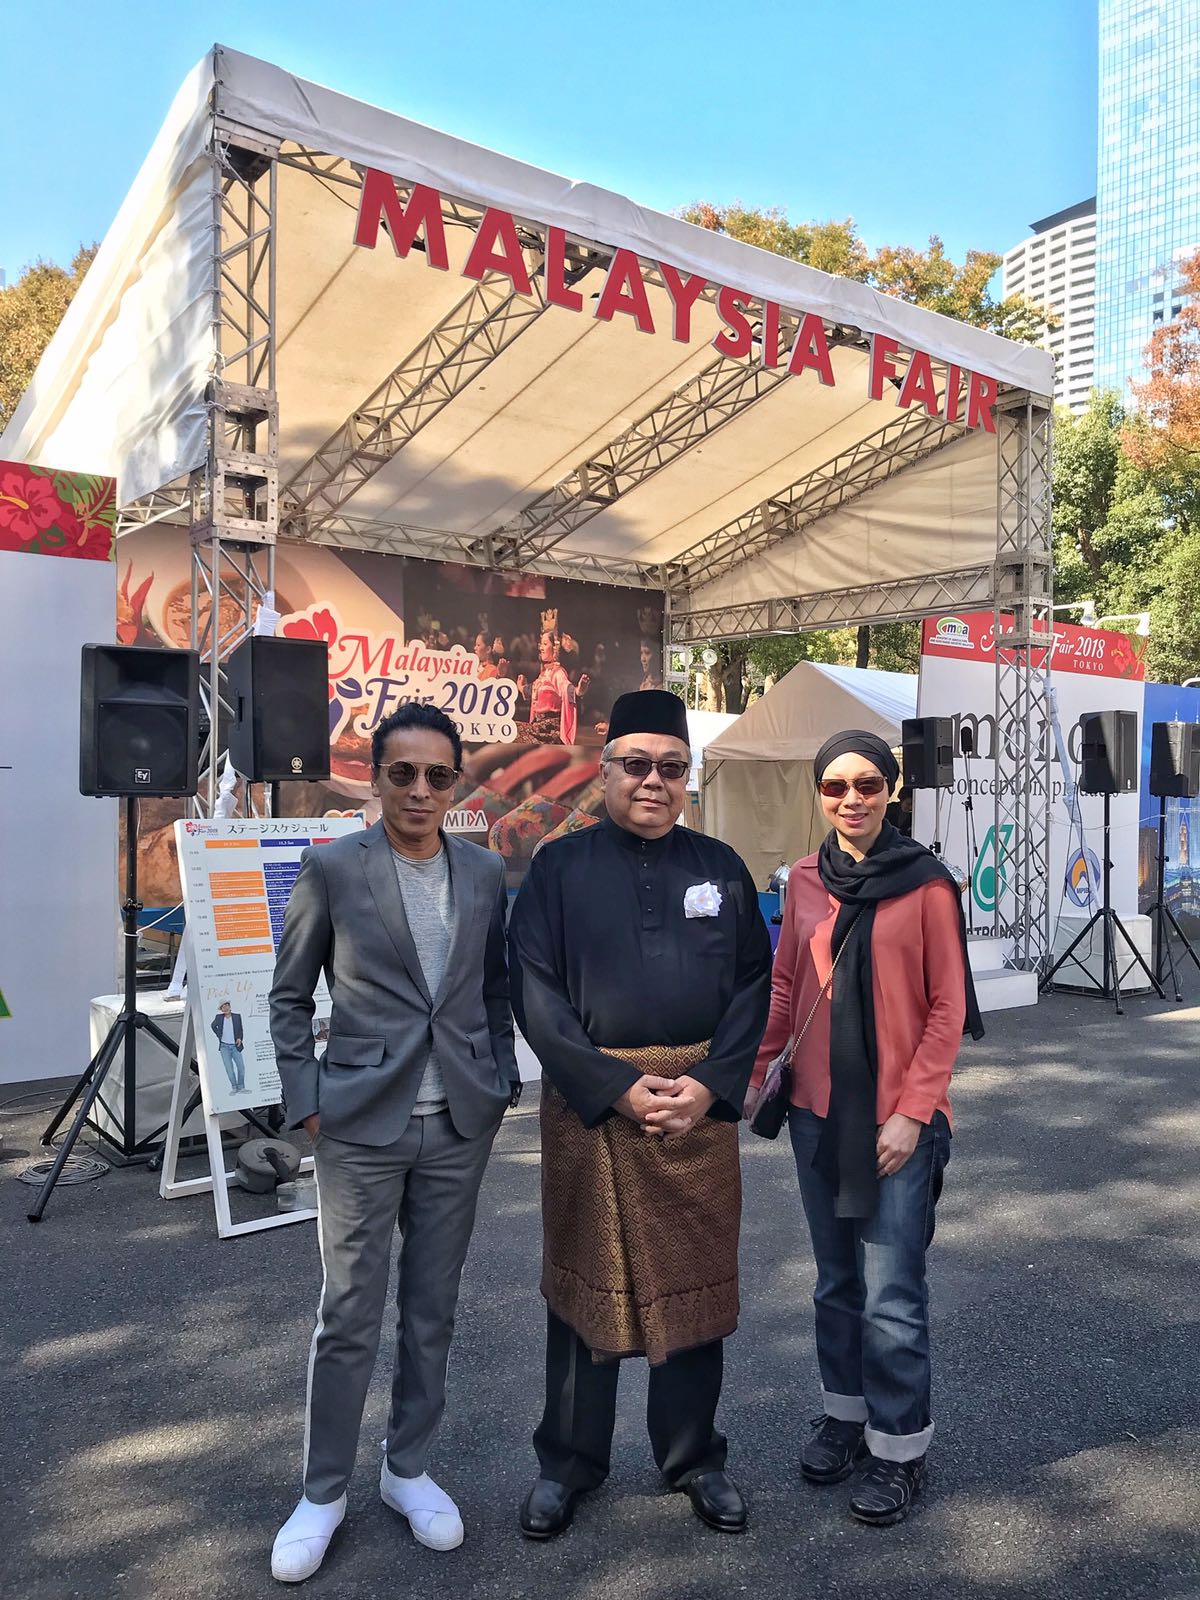 Malaysia Fair 2018 Tokyo - 2-4 November 2018